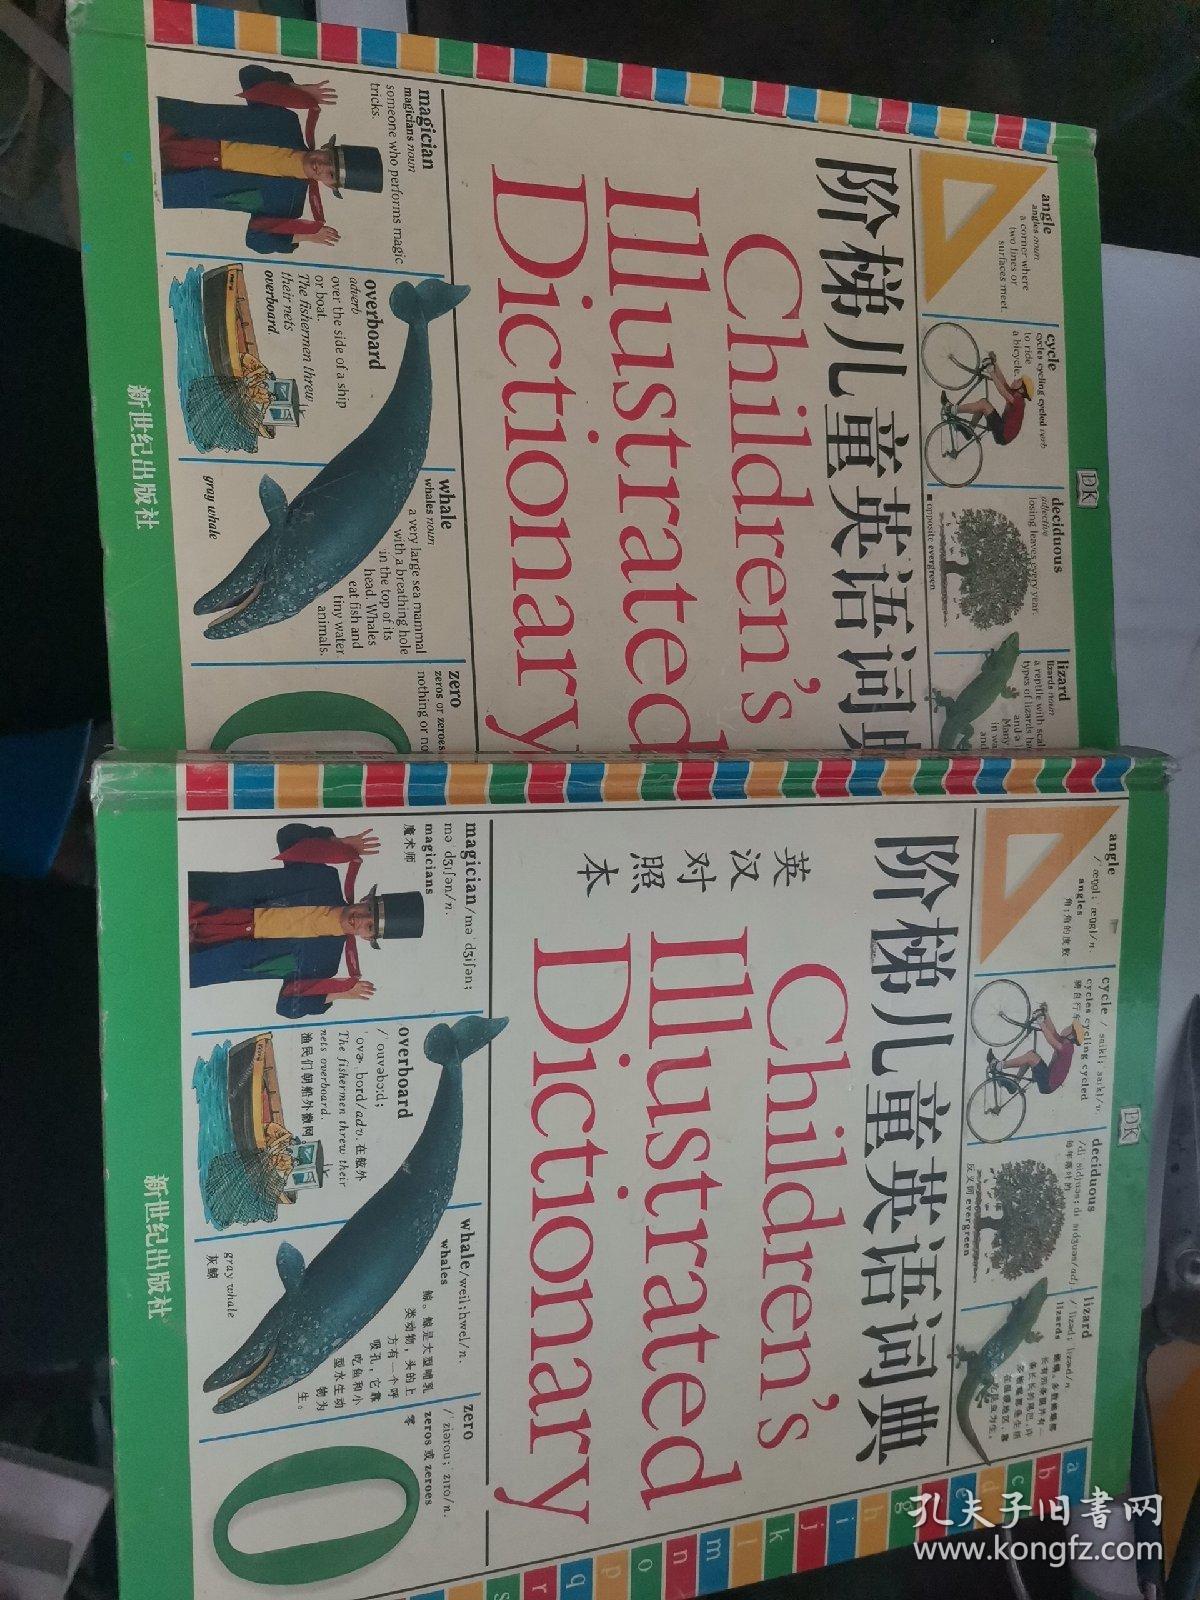 阶梯儿童英语词典【彩色图解.英汉对照本】2本合售